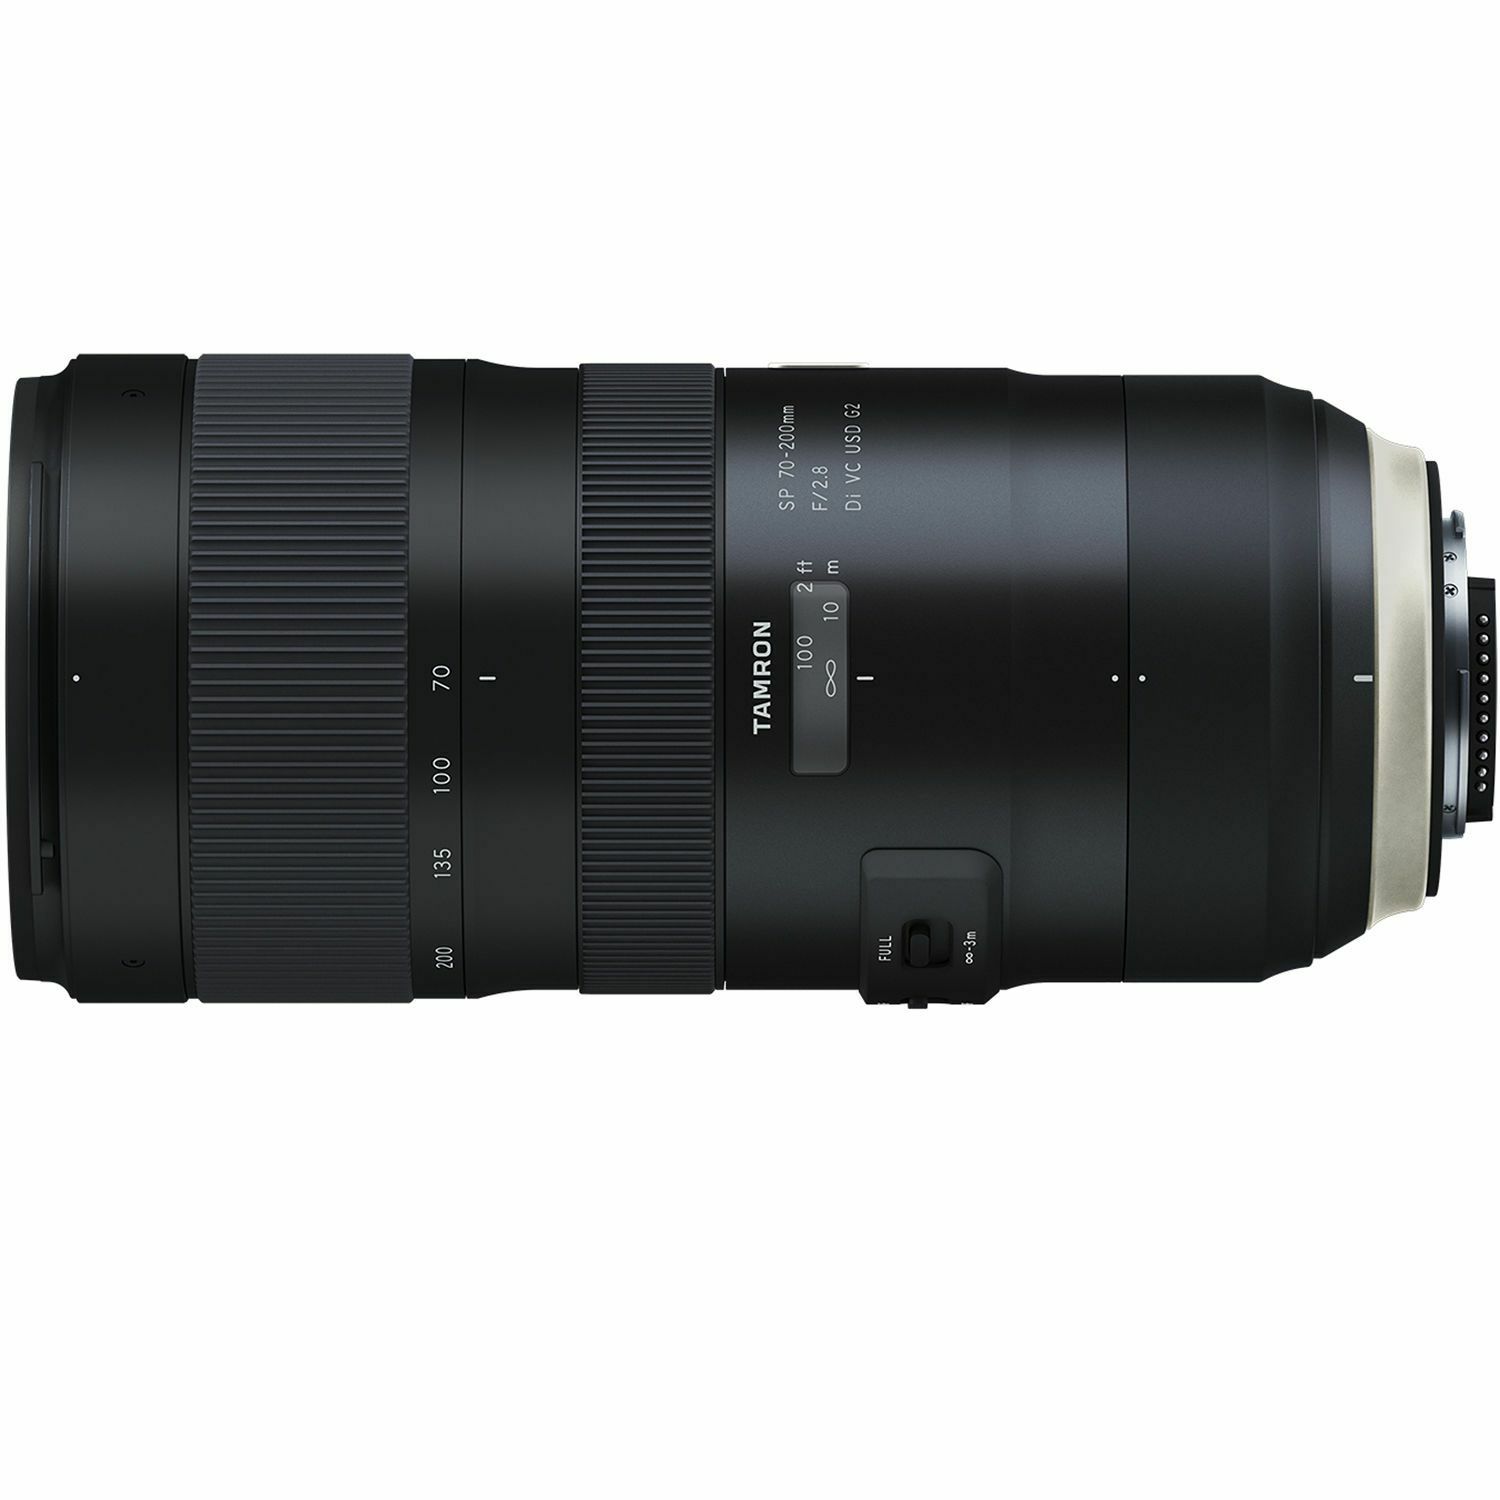 Tamron SP 70-200mm f/2.8 Di VC USD G2 telefoto objektiv za Nikon FX (A025N)